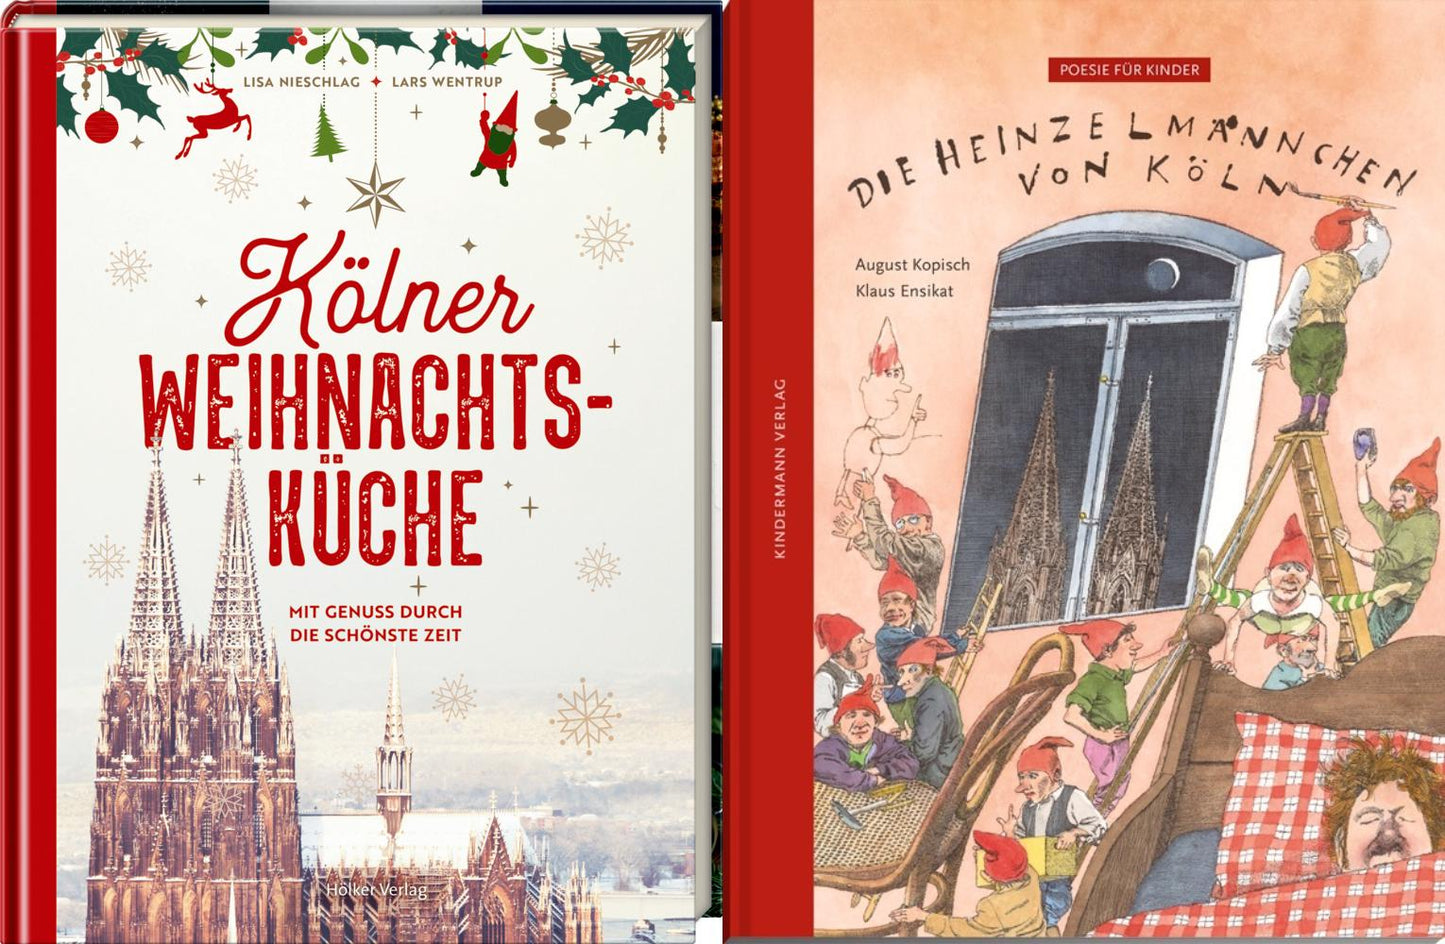 Kölner Weihnachtsküche + Die Heinzelmännchen von Köln + 1 exklusives Postkartenset